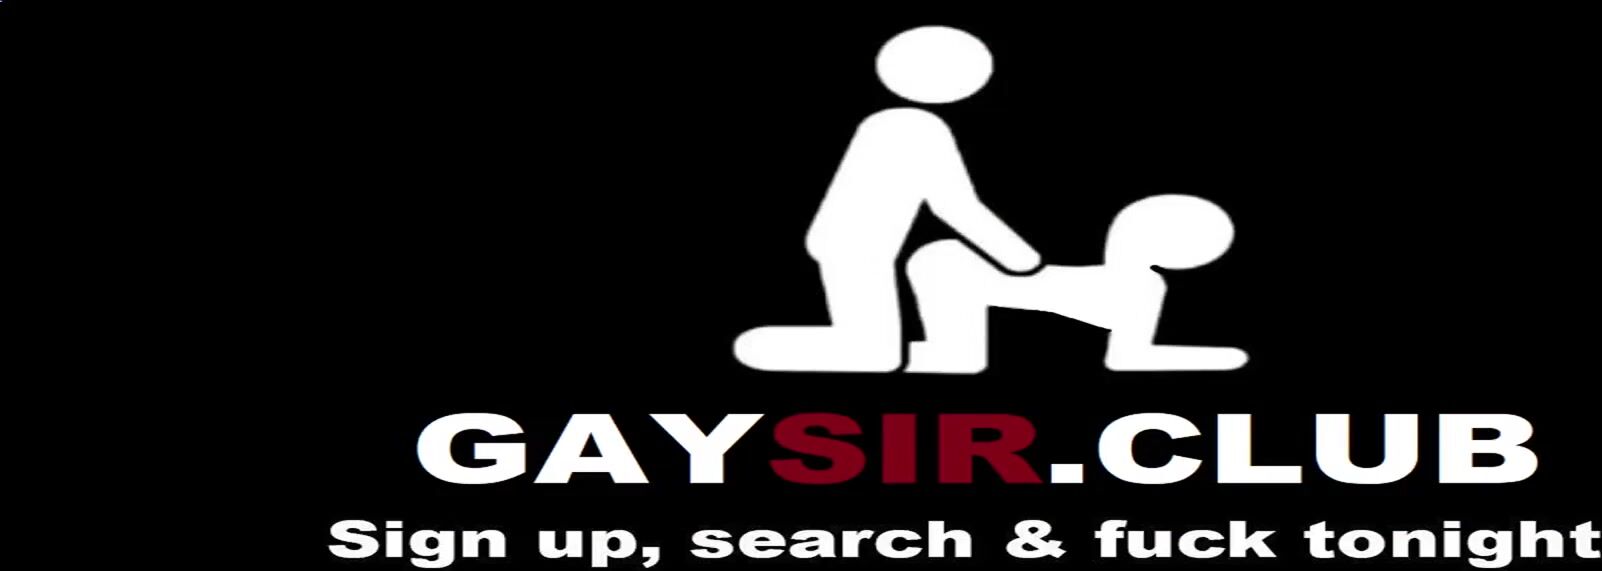 Sexo gay con historias primas y matones latinos peludos y peludos Bri